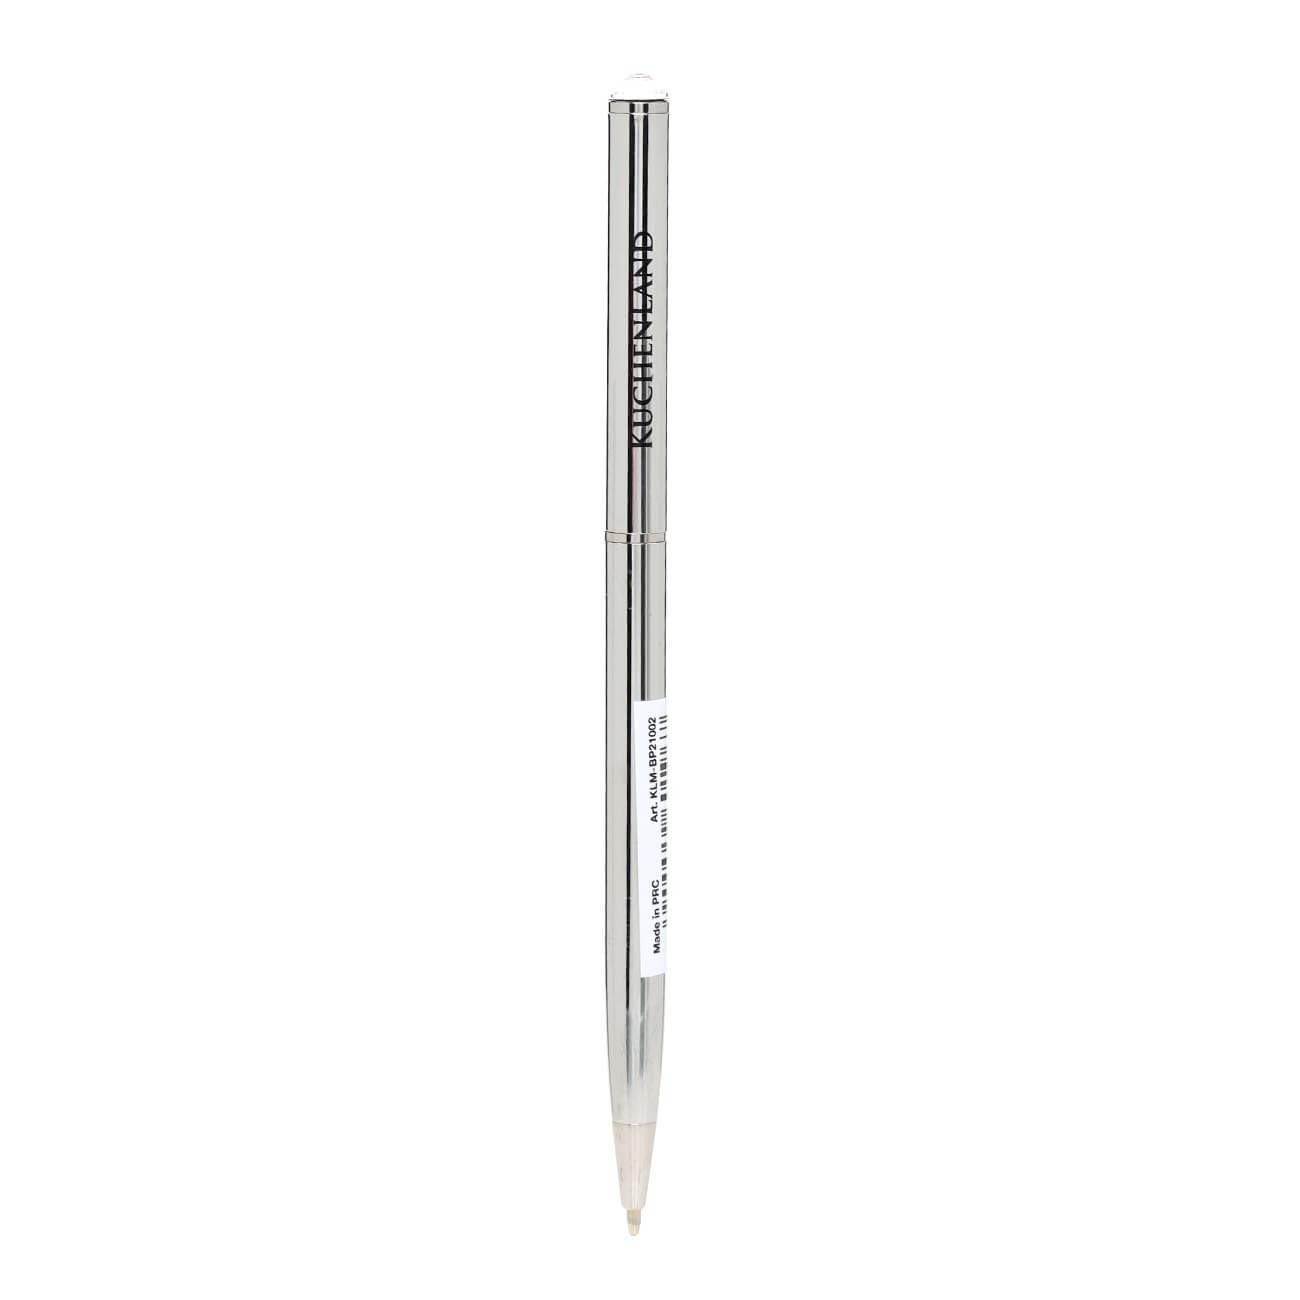 Ручка шариковая, 13 см, с кристаллом, металл, серебристая, Draw ручка шариковая подарочная поворотная в пластиковом футляре бордовая с серебристыми вставками